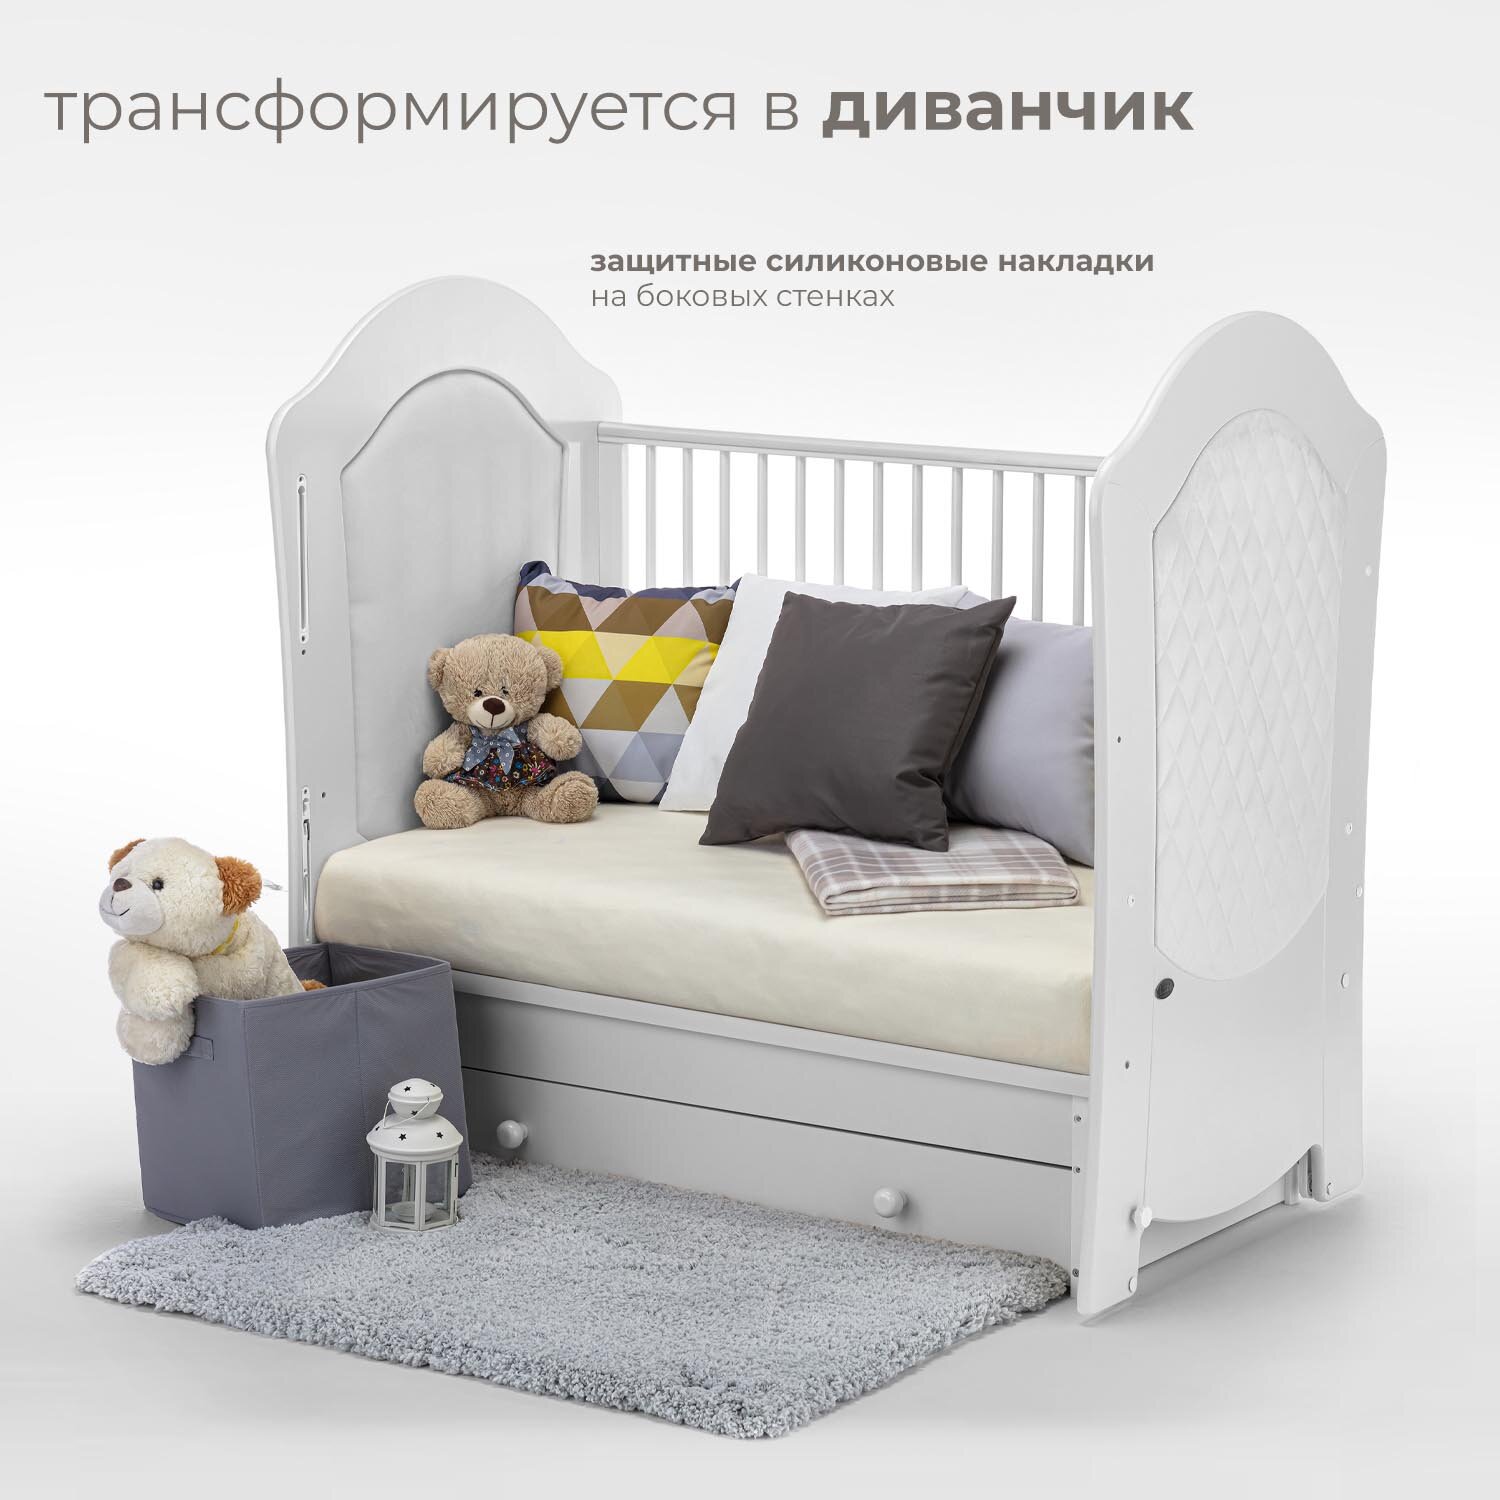 Детская кровать Nuovita Tempi Swing с поперечным маятником, слоновая кость - фото №6